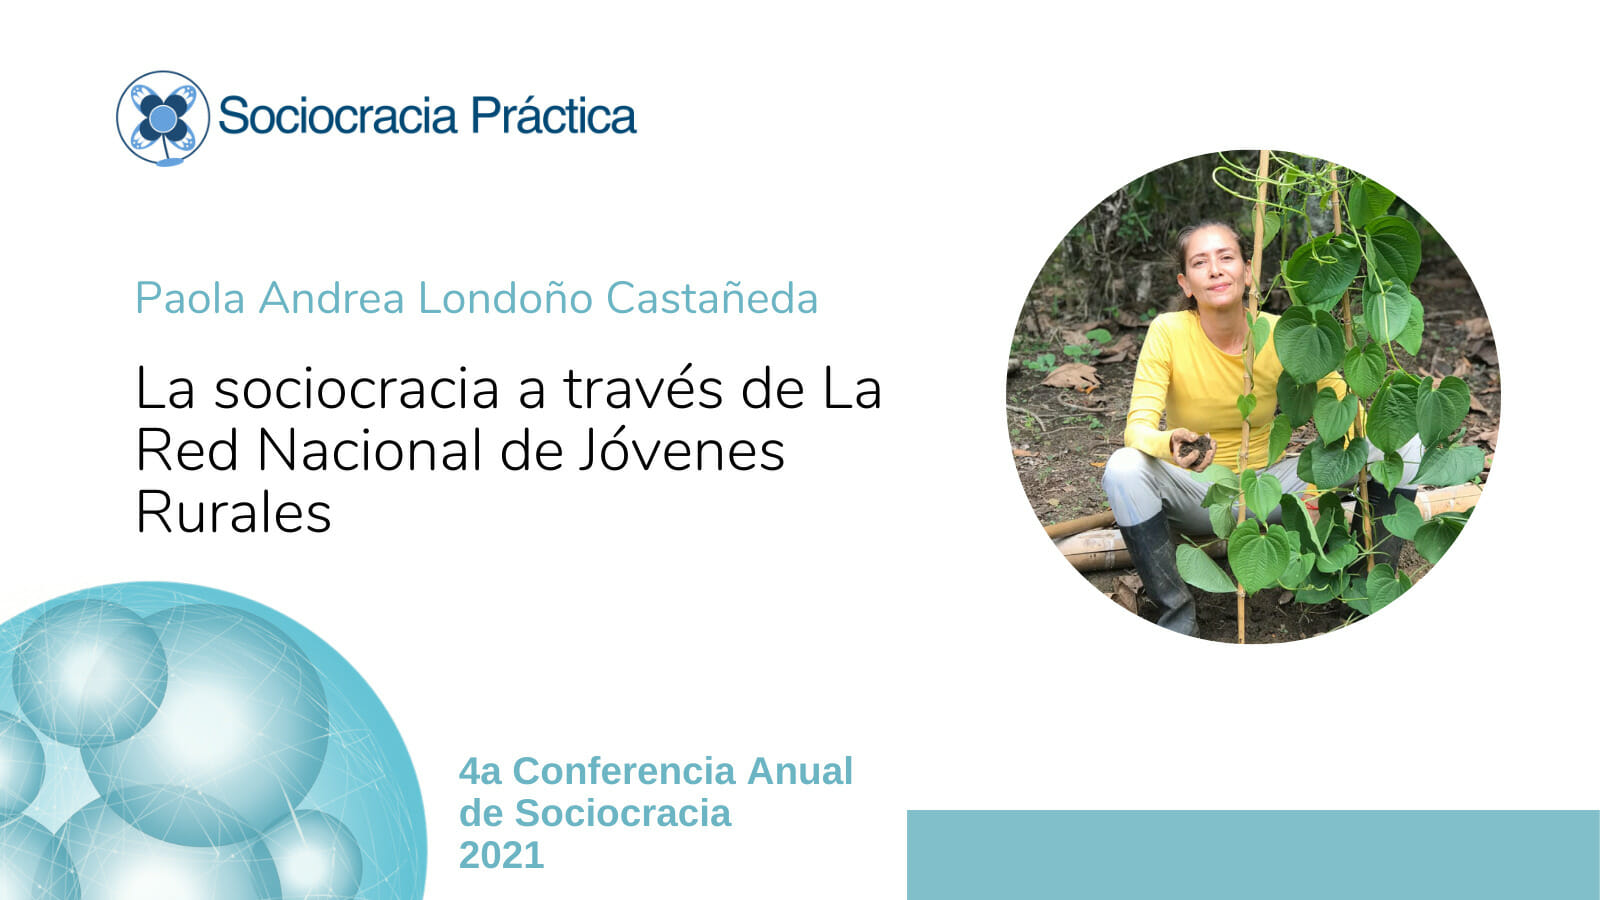 Las sociocracia a través de La Red Nacional de Jóvenes Rurales (Paola Andrea Londoño Castañeda)